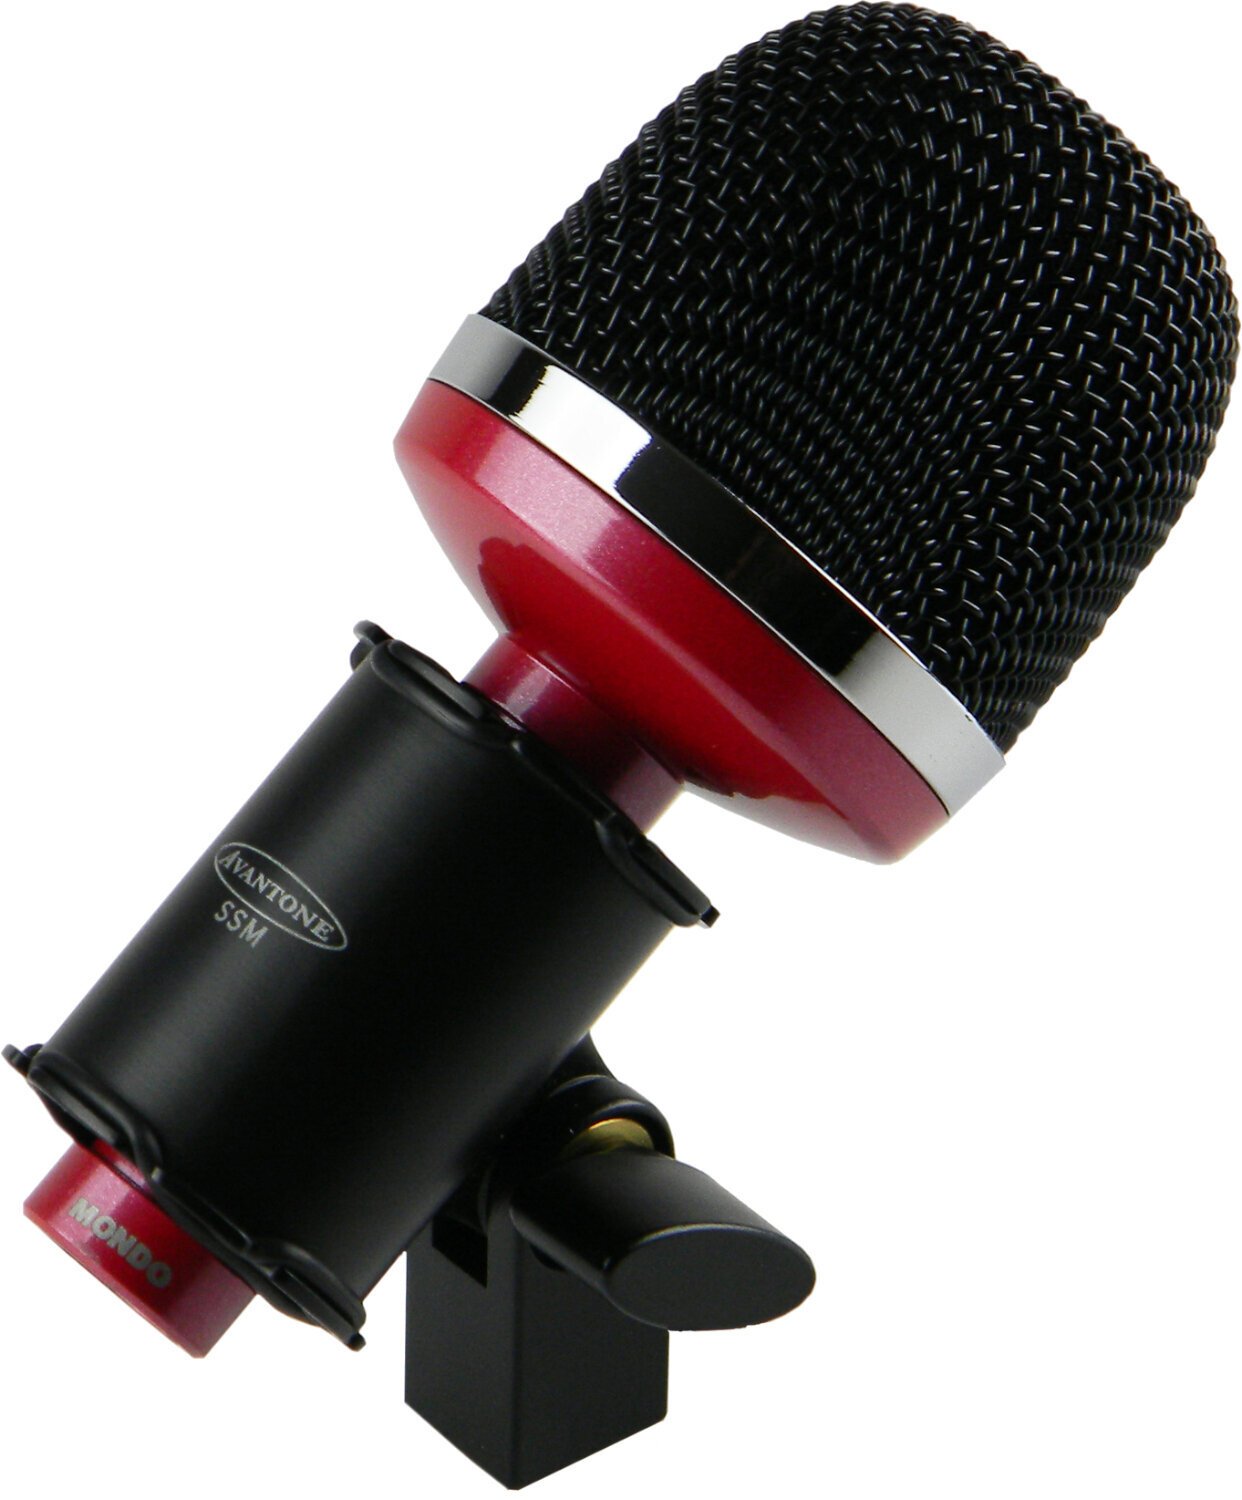  Lábdob mikrofon Avantone Pro Mondo  Lábdob mikrofon